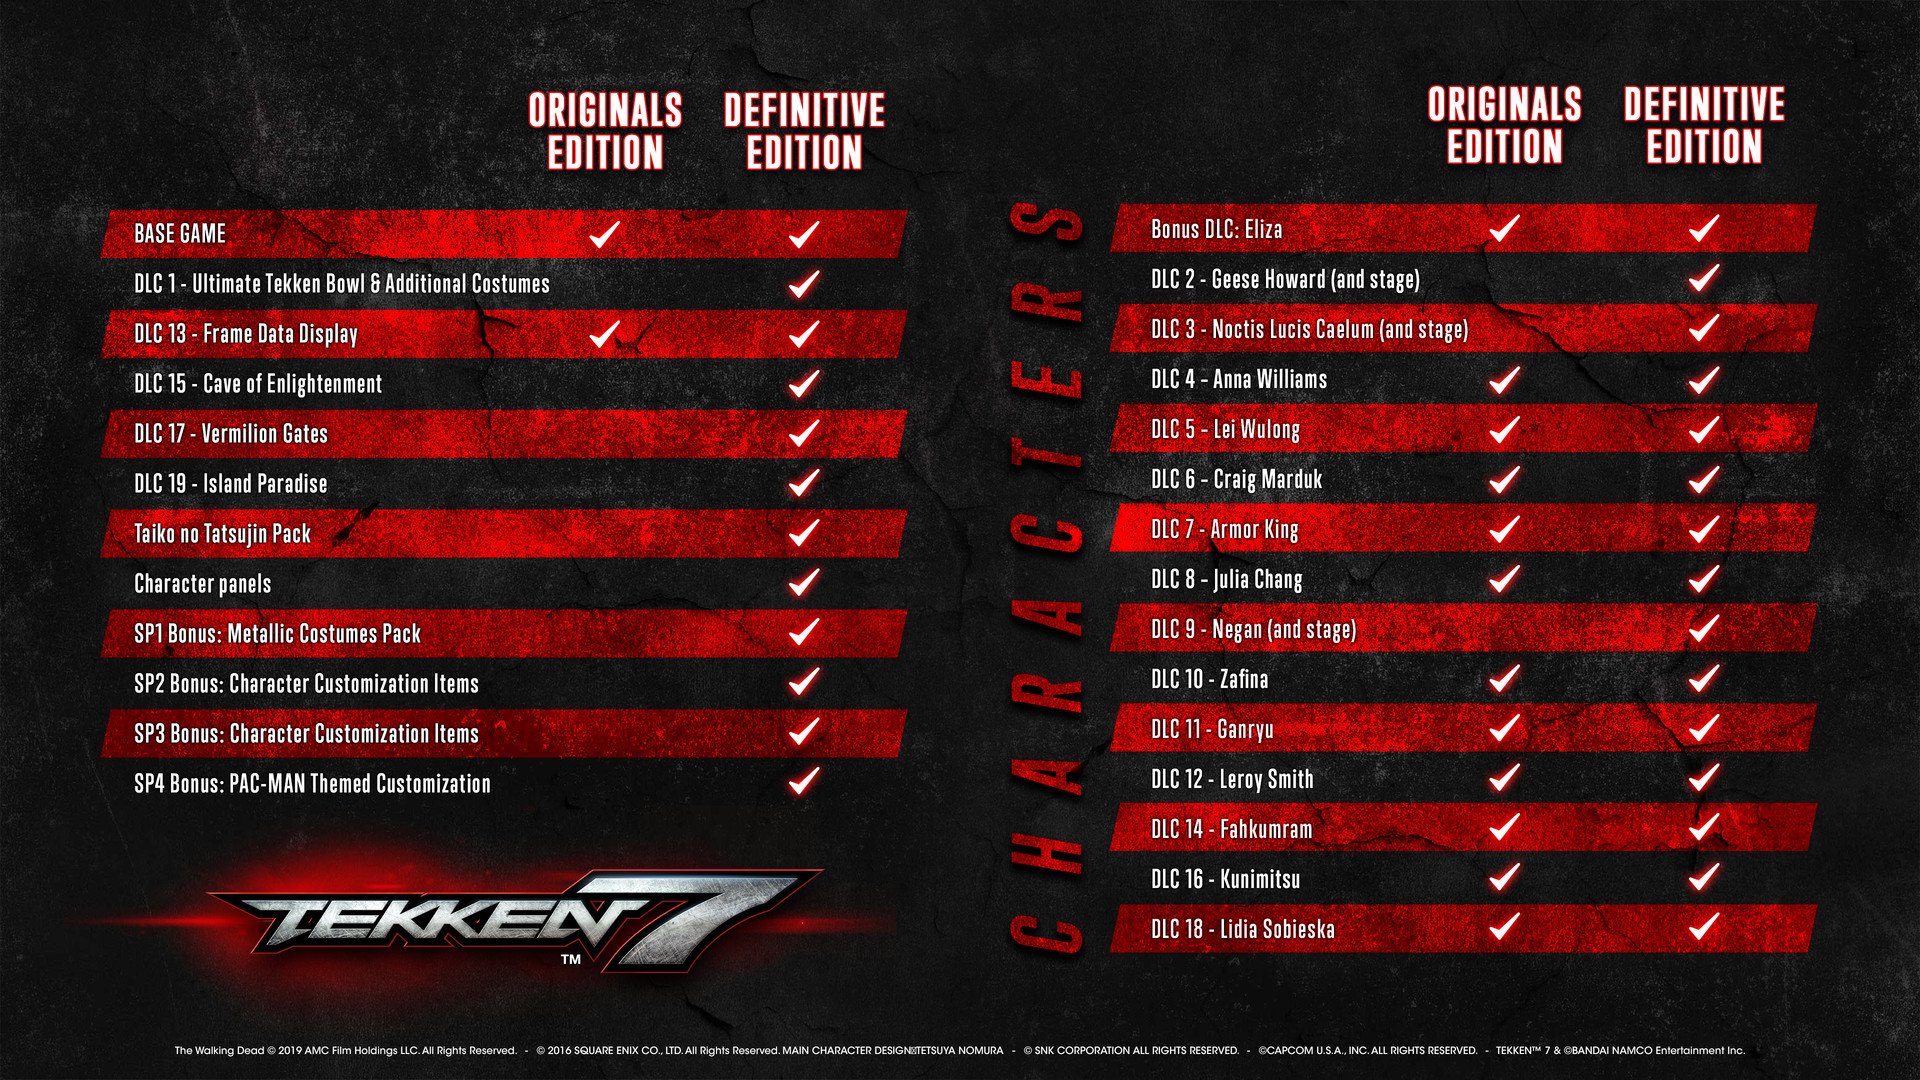 Tekken 7 Originals Edition 10